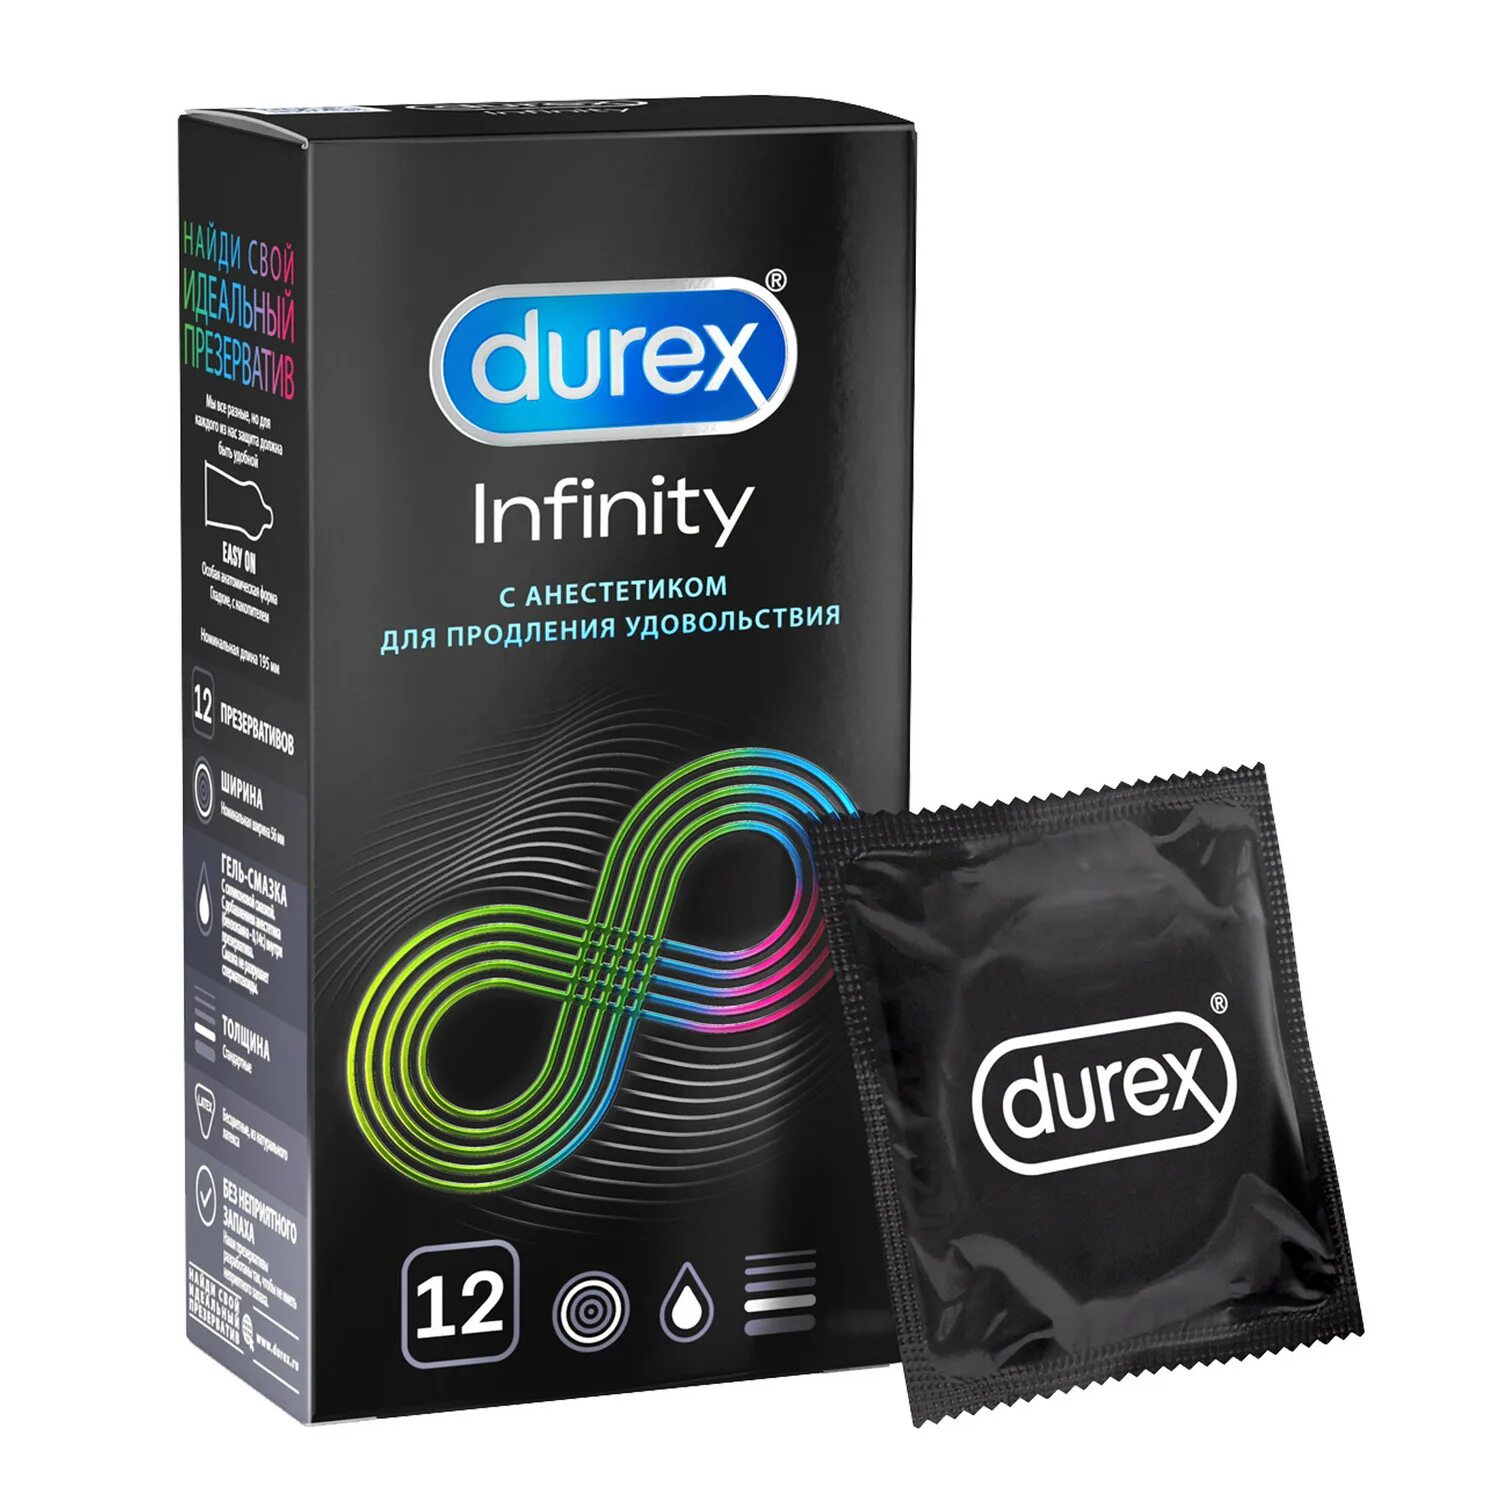 Презервативы Durex Dual Extase рельефные, с анестетиком 12 шт. Durex Infinity презервативы с анестетиком, 12 шт. Дюрекс презервативы Infinity с анестетиком гладкие (вариант 2) №12. Презервативы Durex Infinity с анестетиком гладкие (вариант 2) n12 уп.